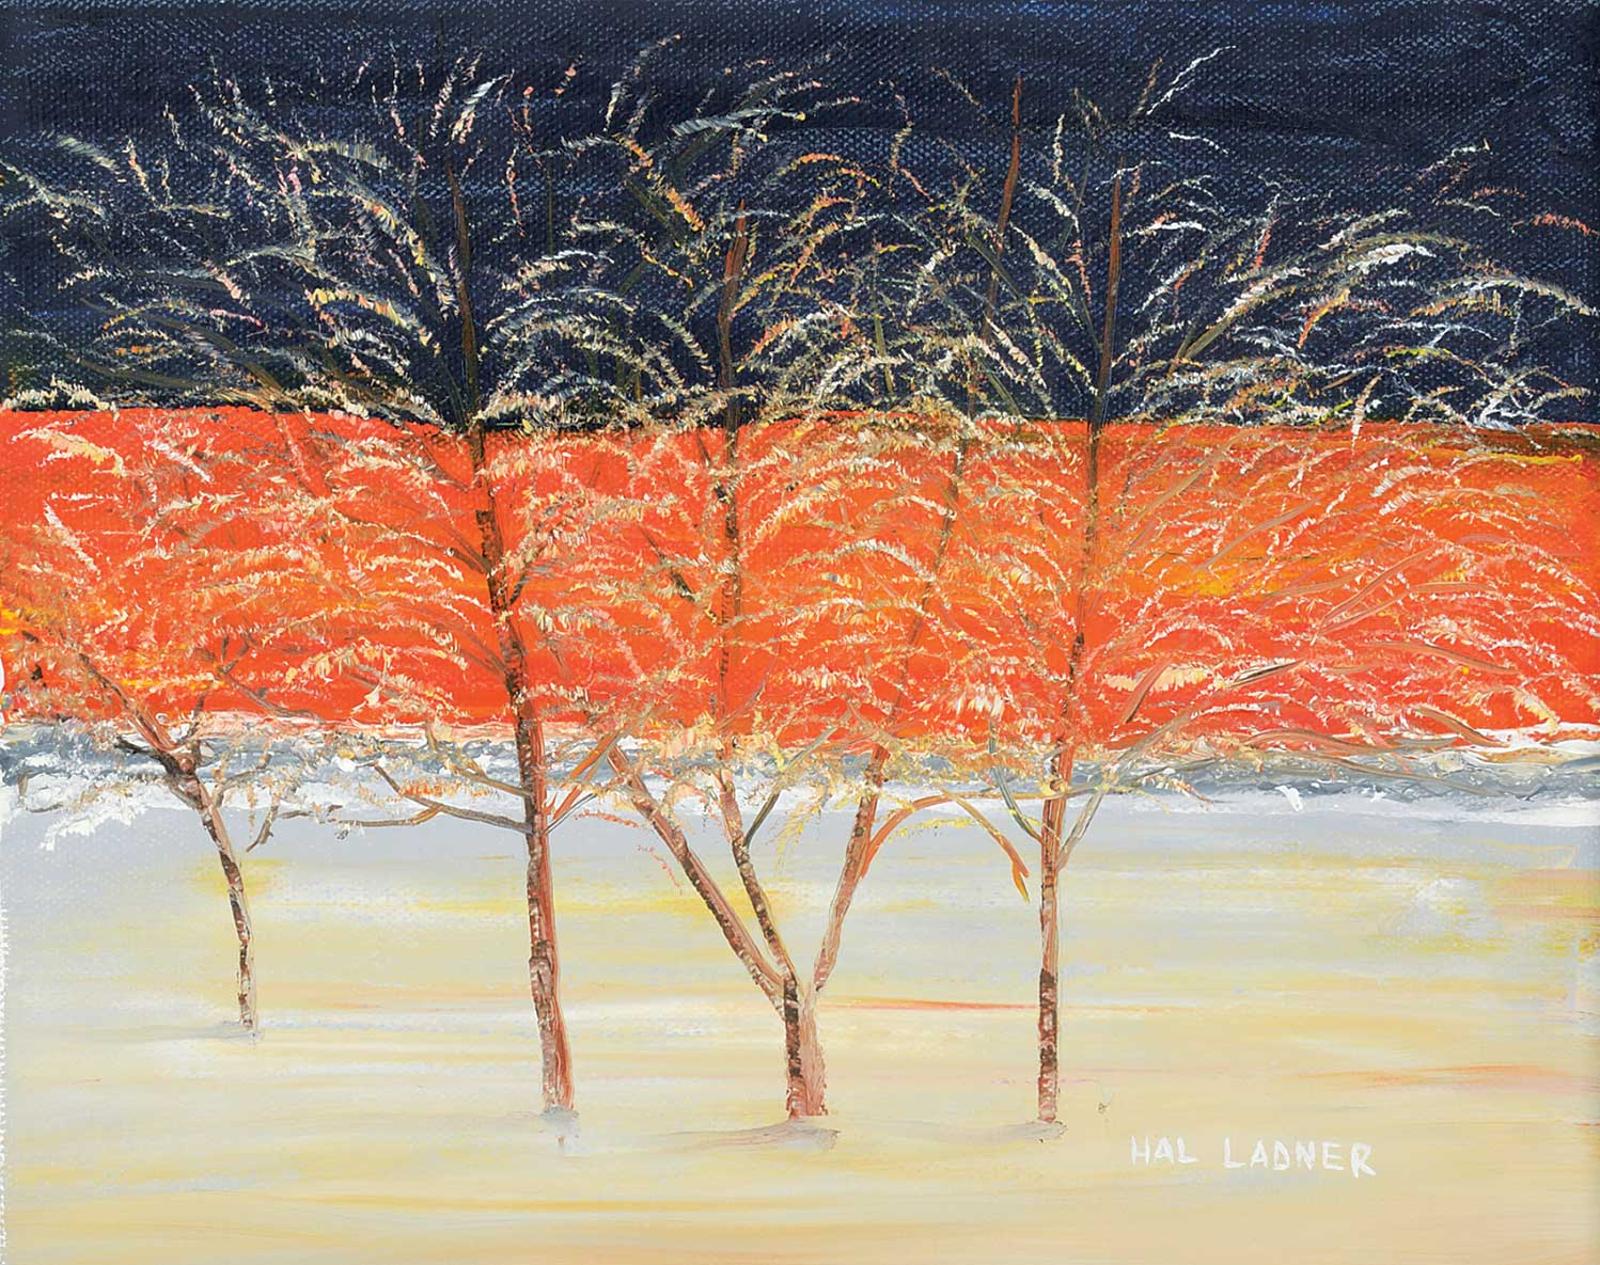 Hal Ladner - Hoar Frost